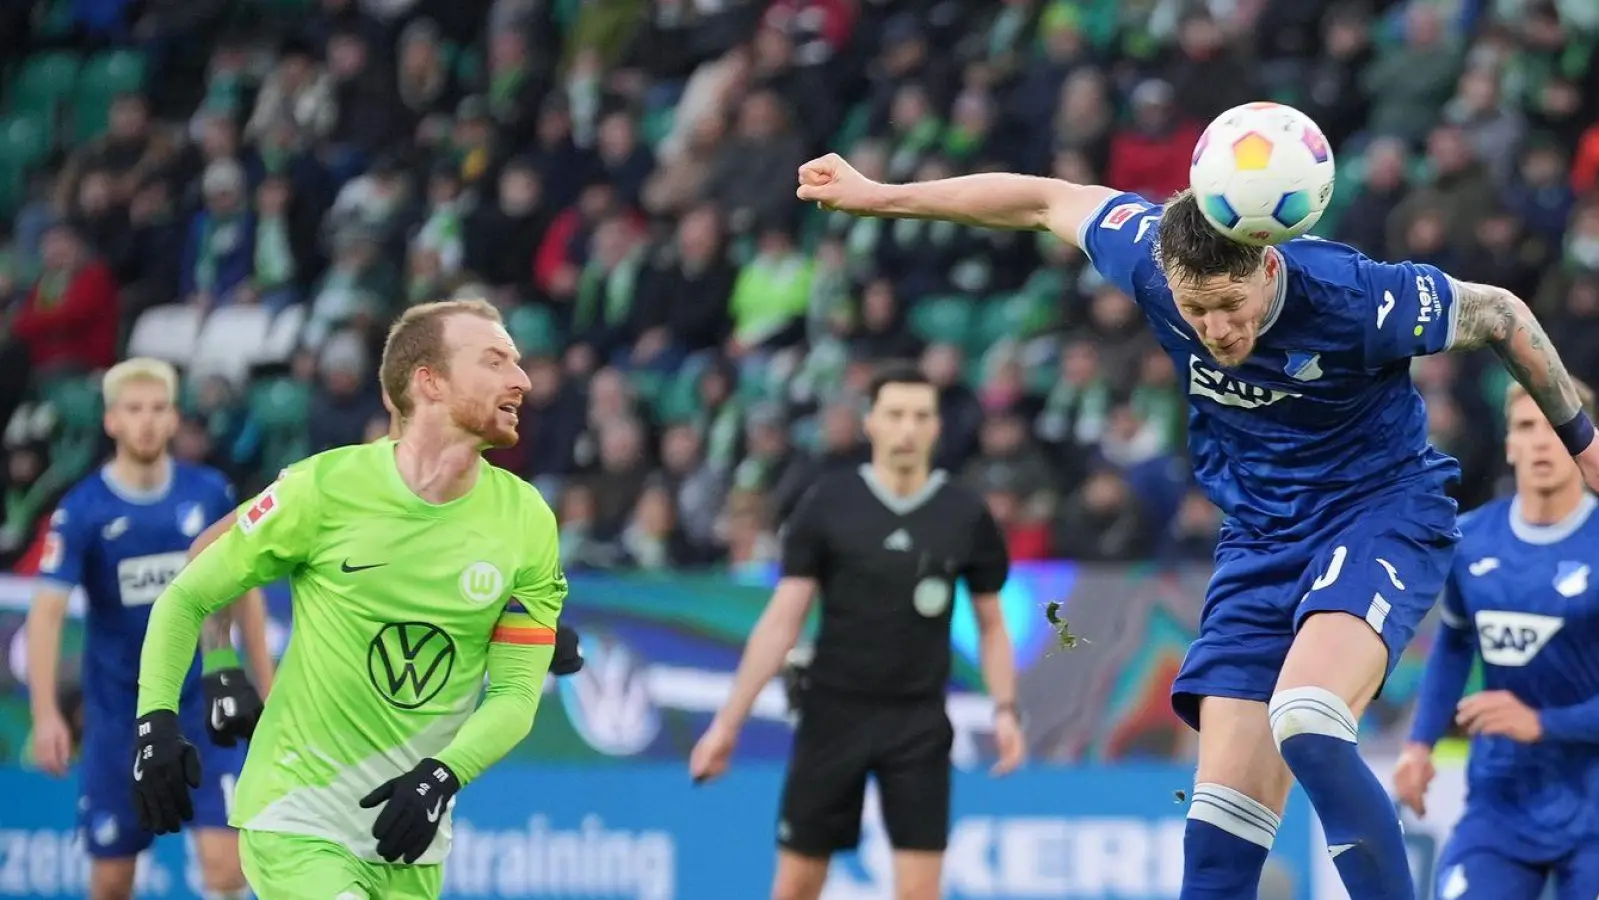 Das Spiel zwischen VfL Wolfsburg und TSG 1899 Hoffenheim ist in der ersten Halbzeit für kurze Zeit unterbrochen worden. (Foto: Soeren Stache/dpa)